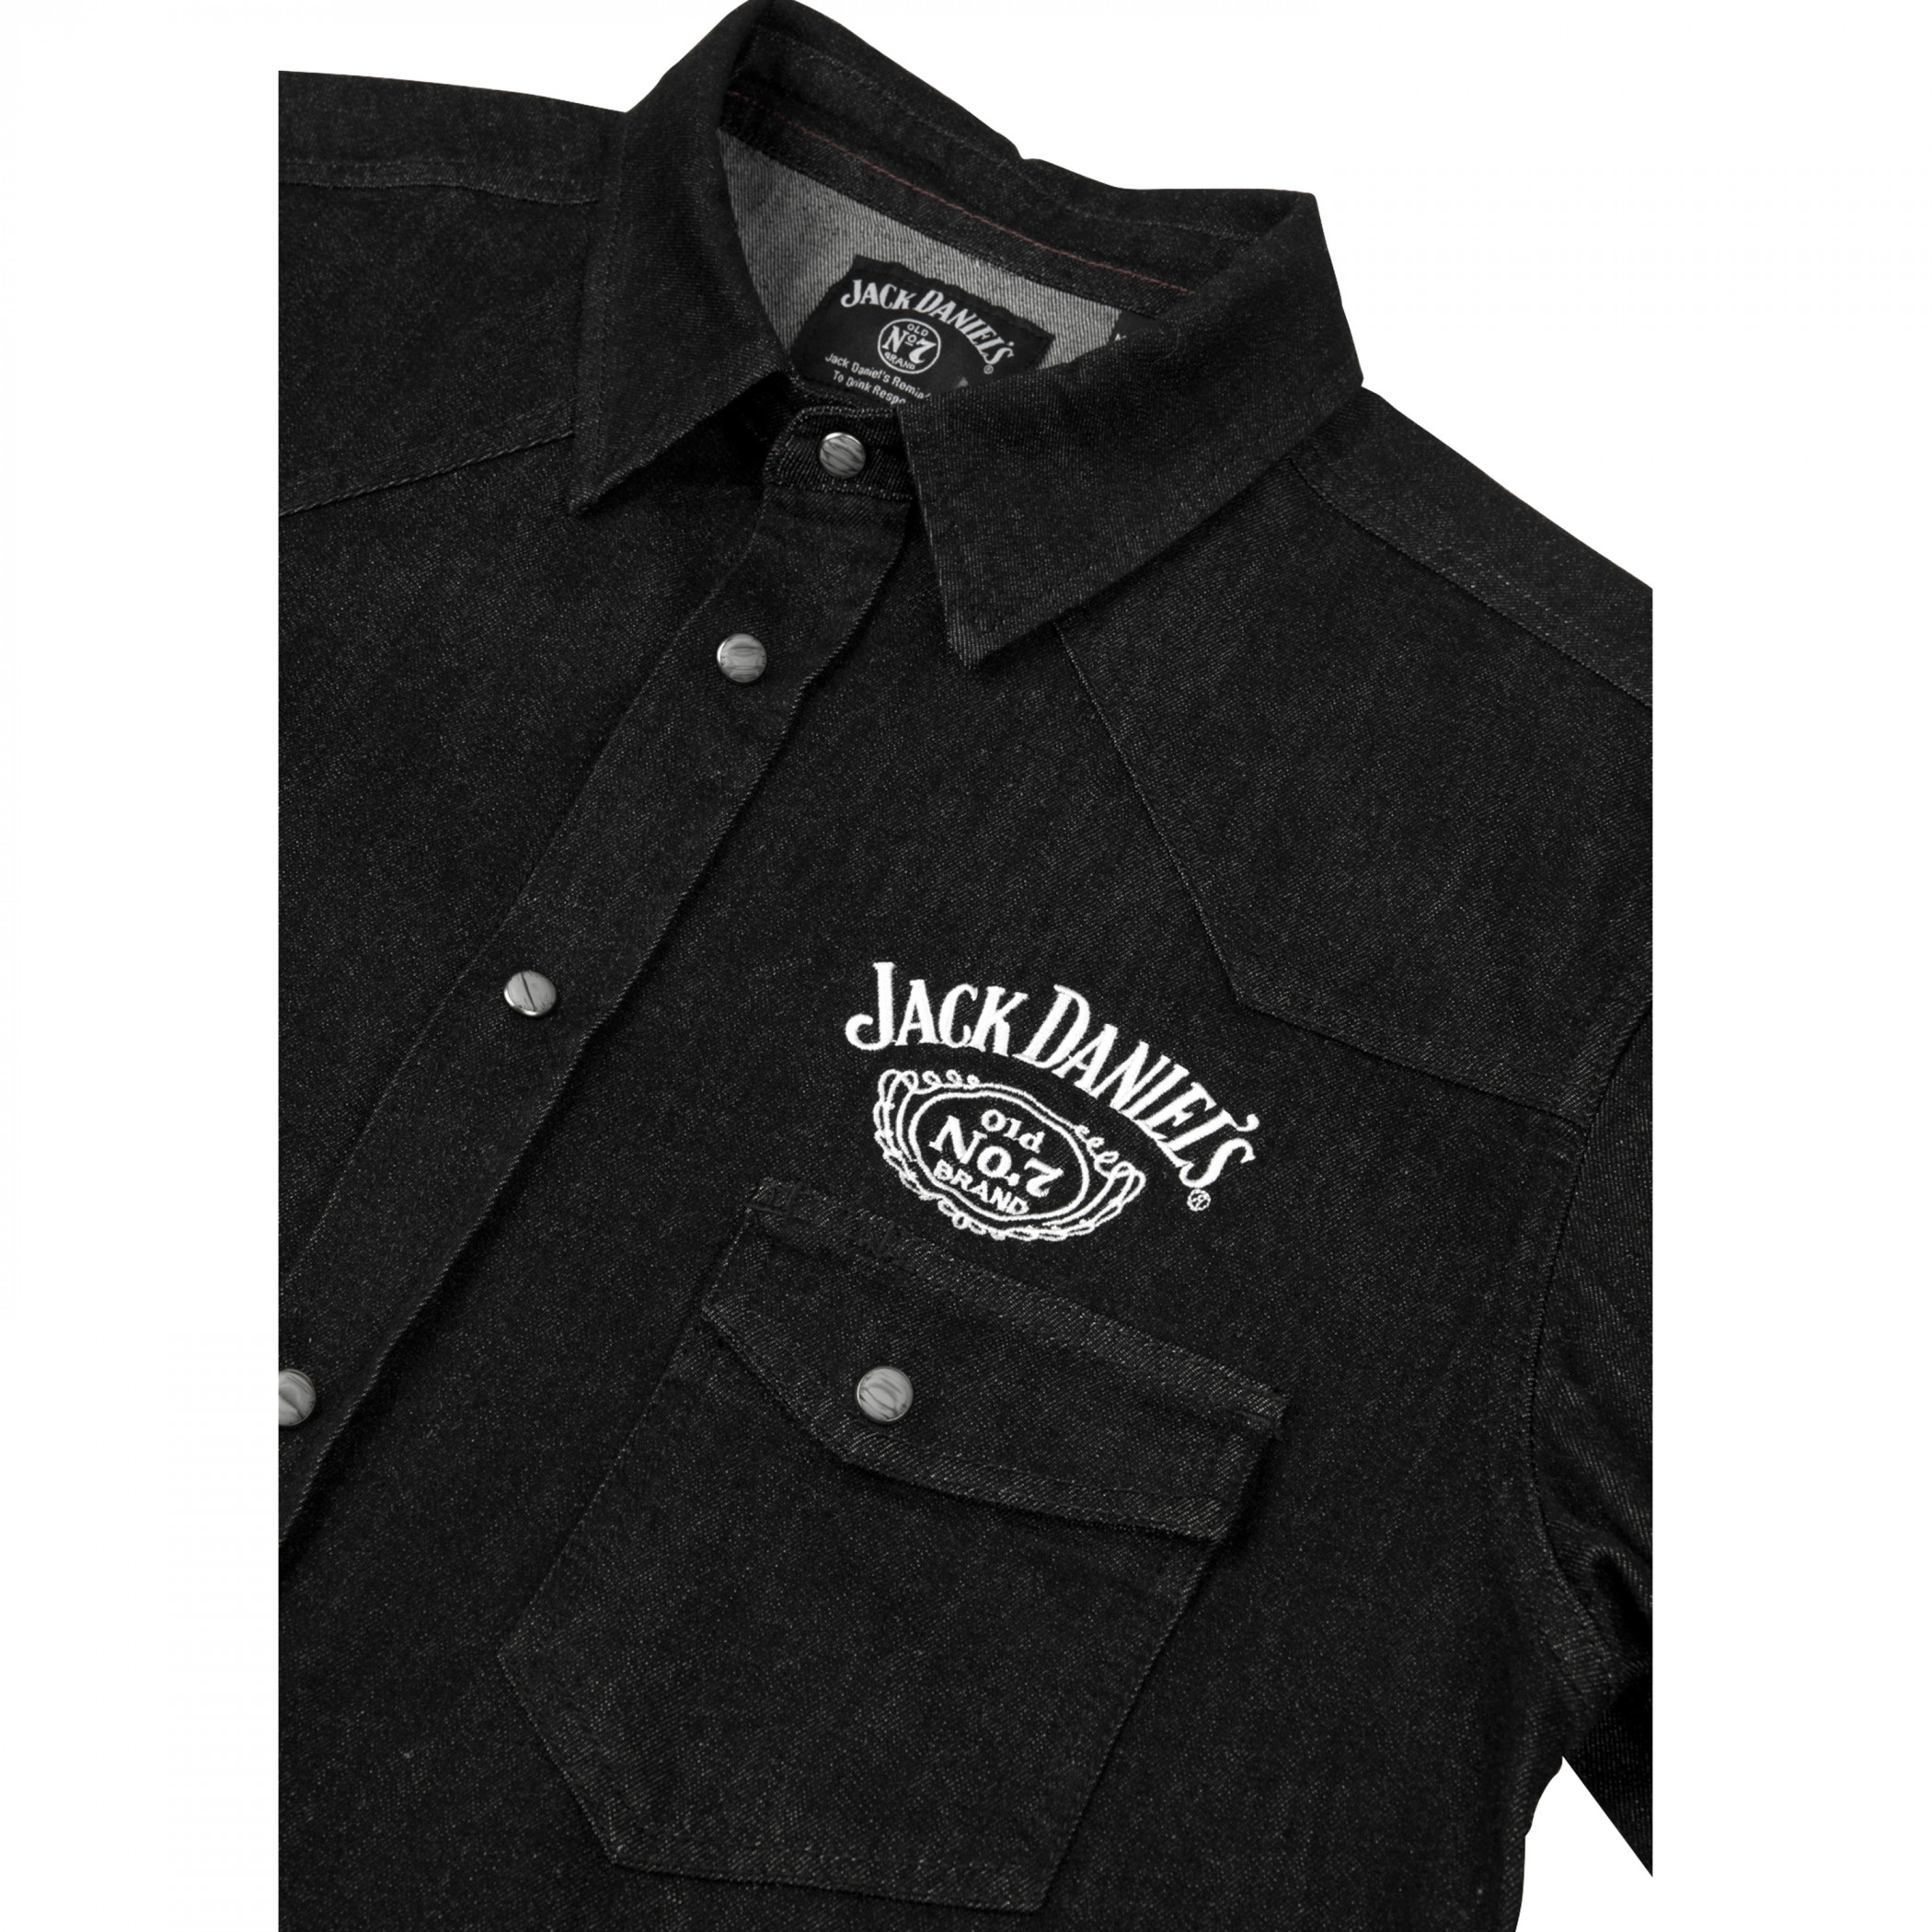 Jack Daniel's Denim Western Snap Buttons Shirt